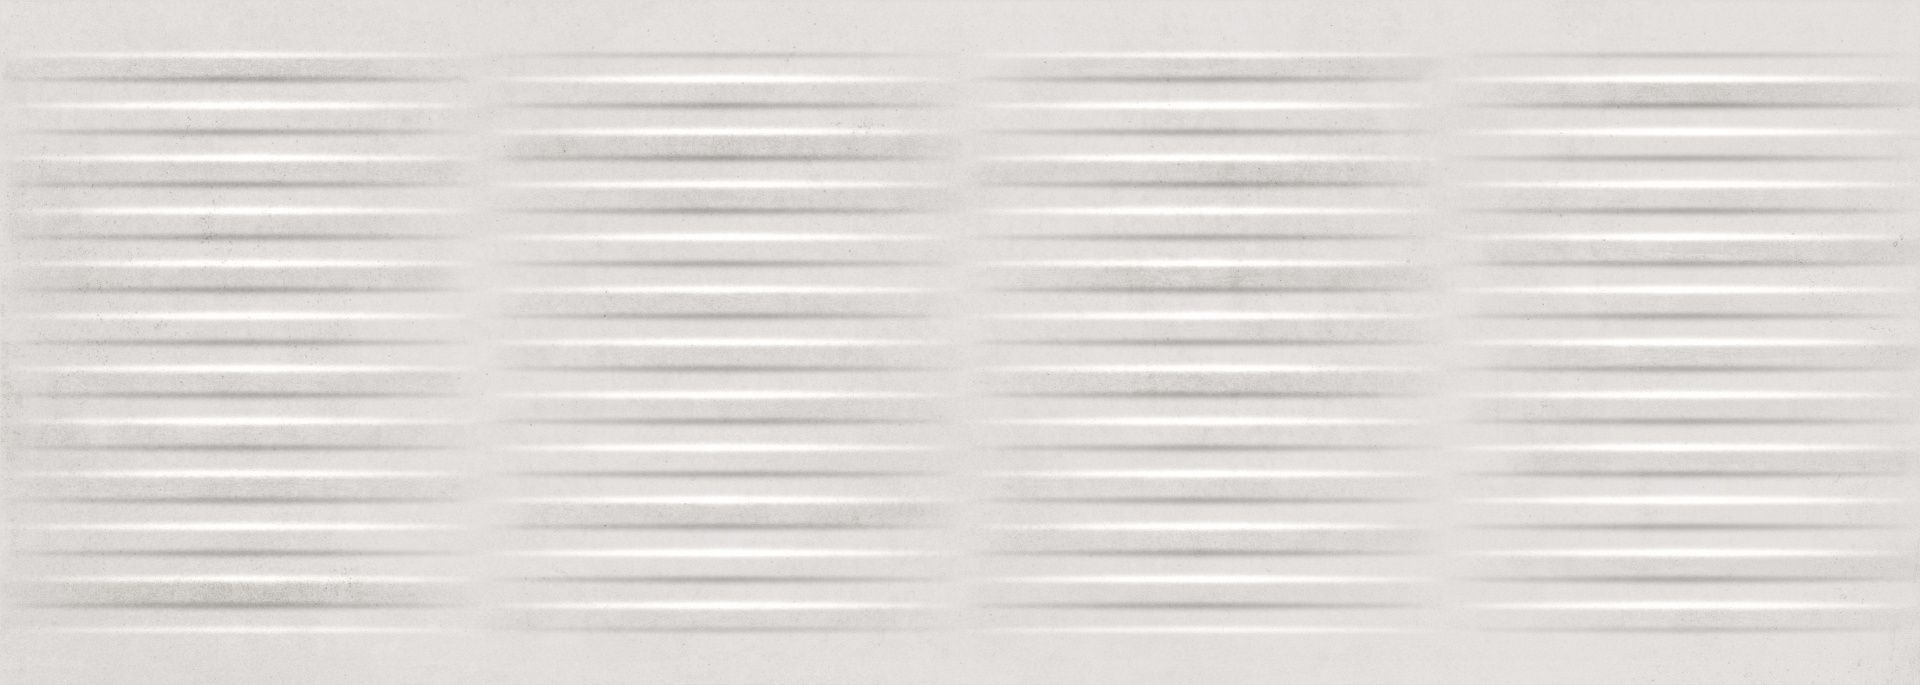 Керамическая плитка Mark Concept Blanco для стен 25x70